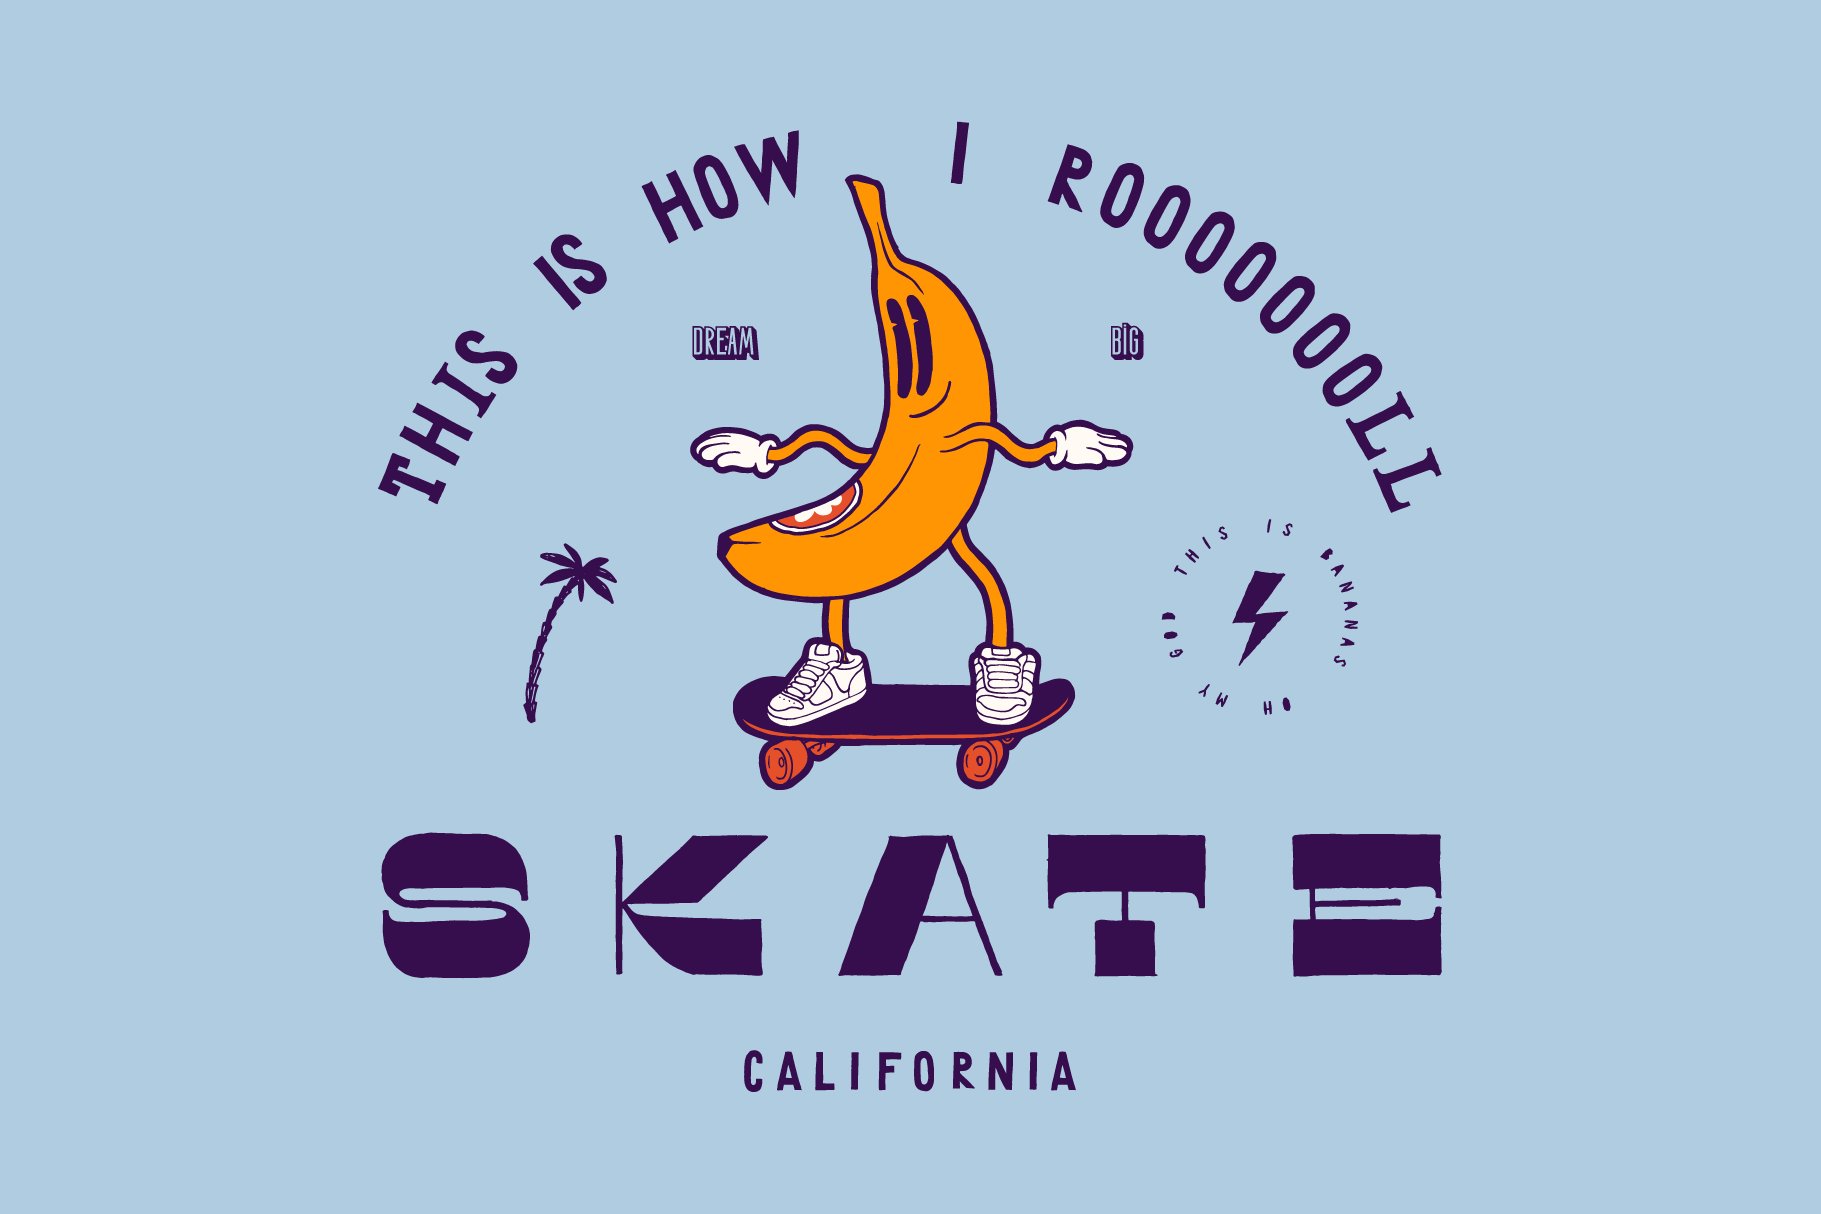 Banana Skater cover image.